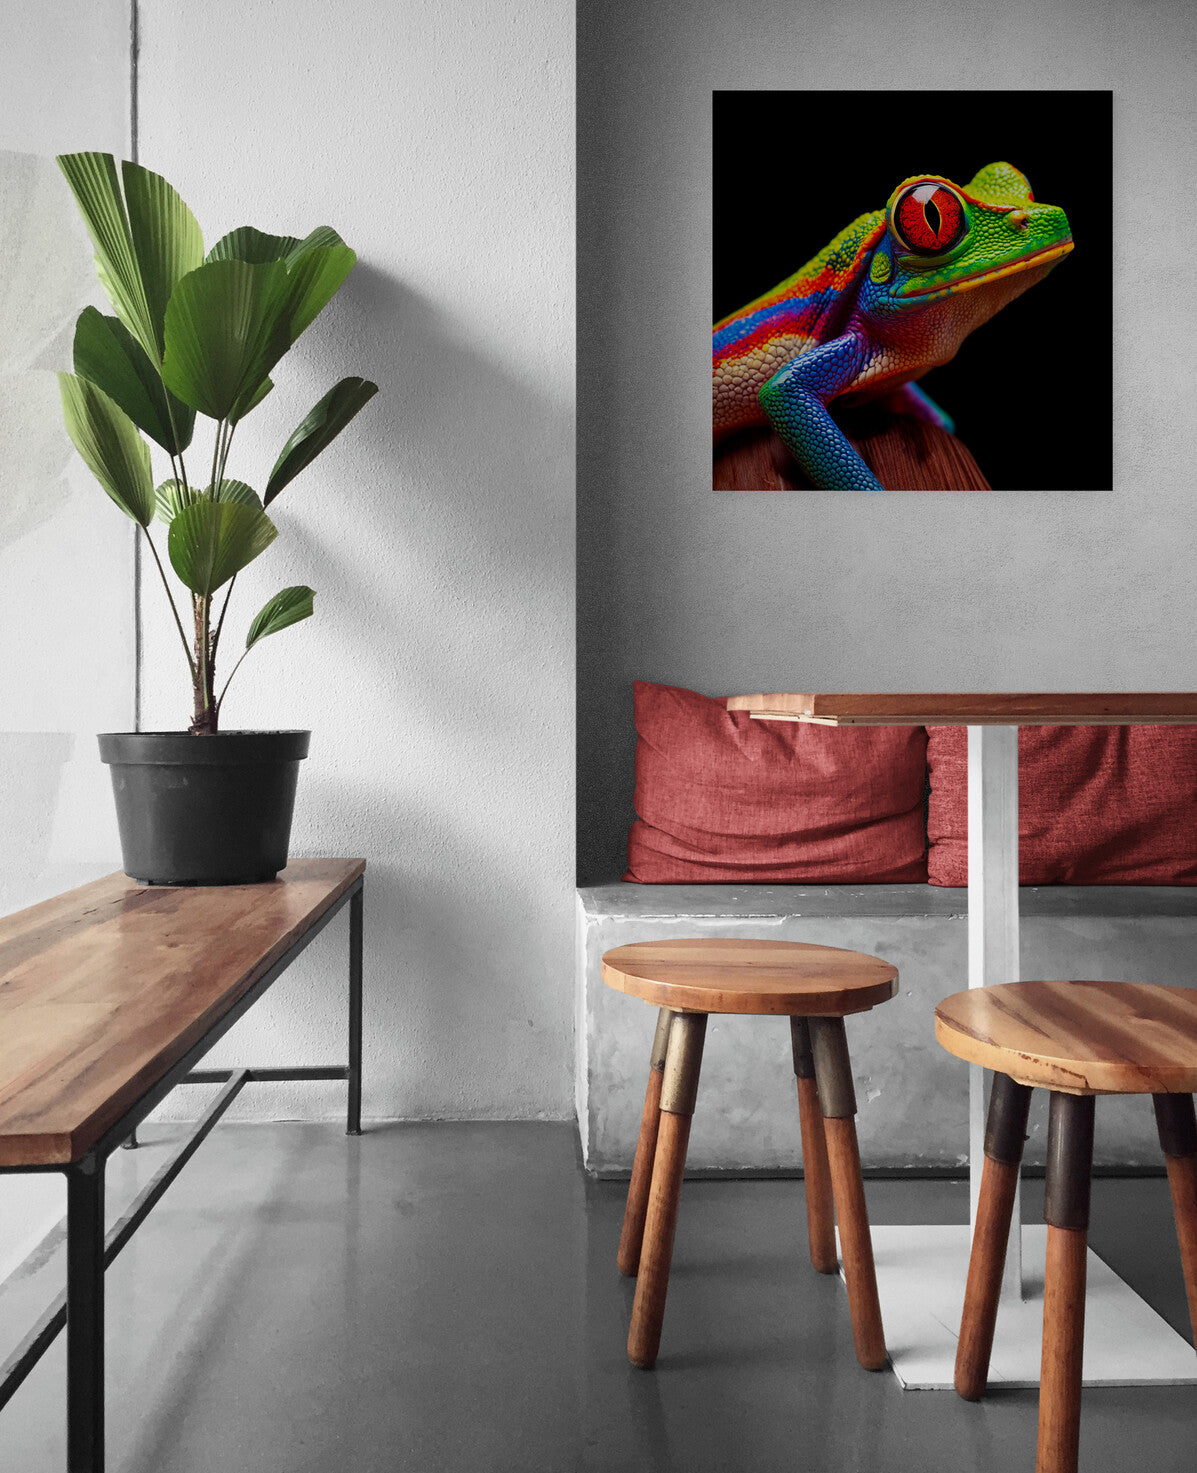 une toile photo avec une grenouille arboricole aux yeux rouges, apporte une ambiance tropical et fraiche dans la décoration de la piéce